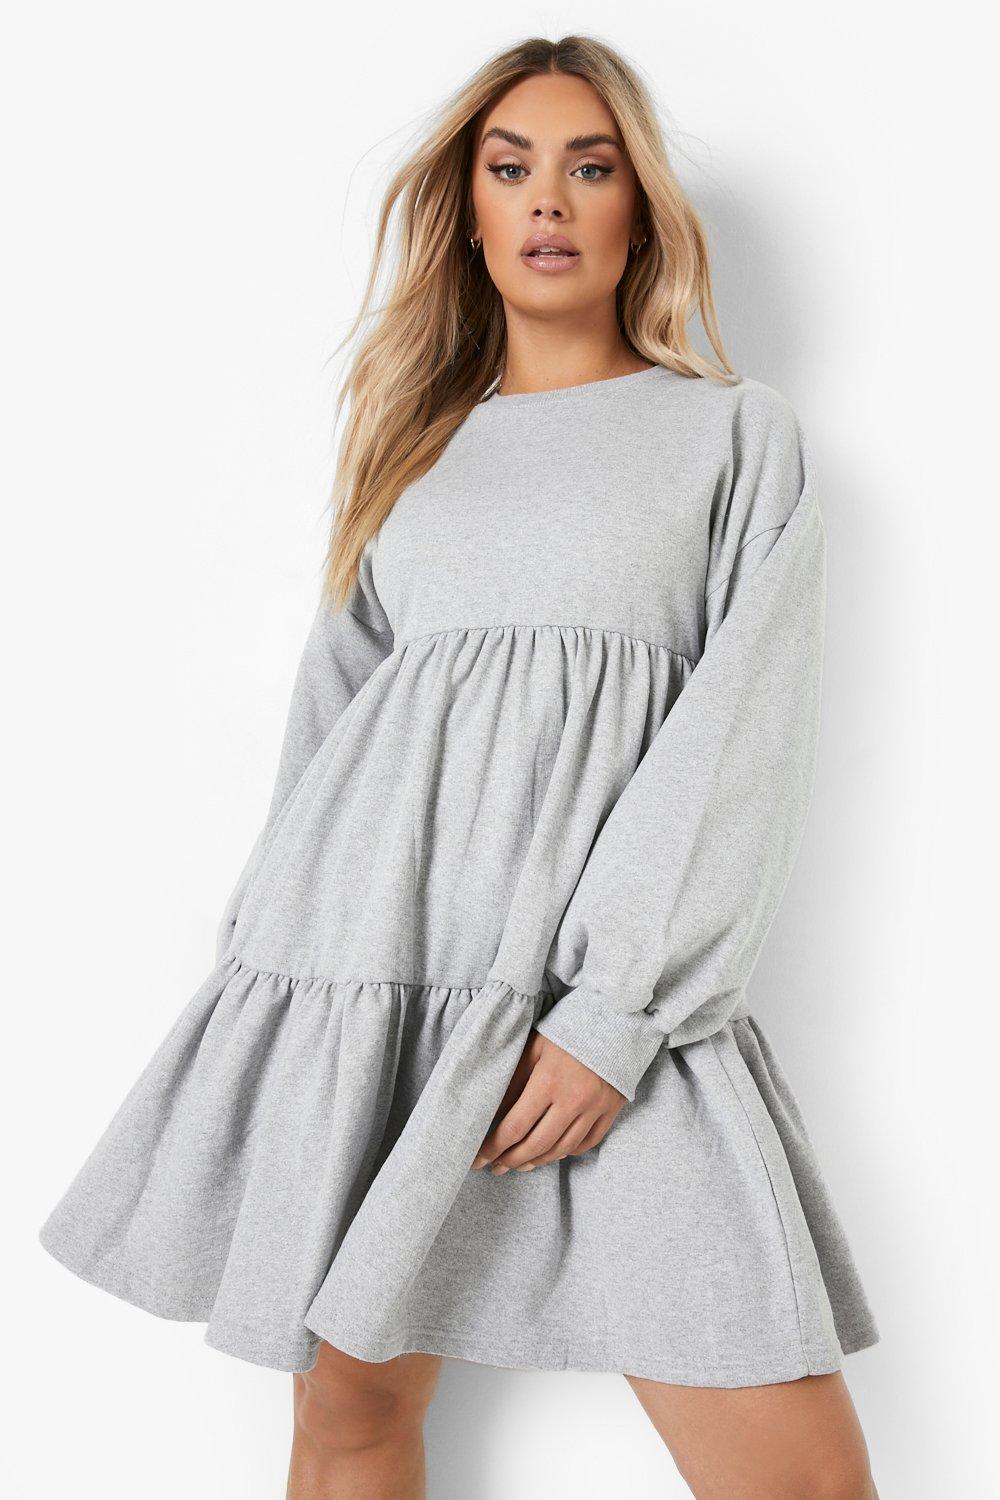 Sweatshirt Dresses | Hoodie Dresses ...